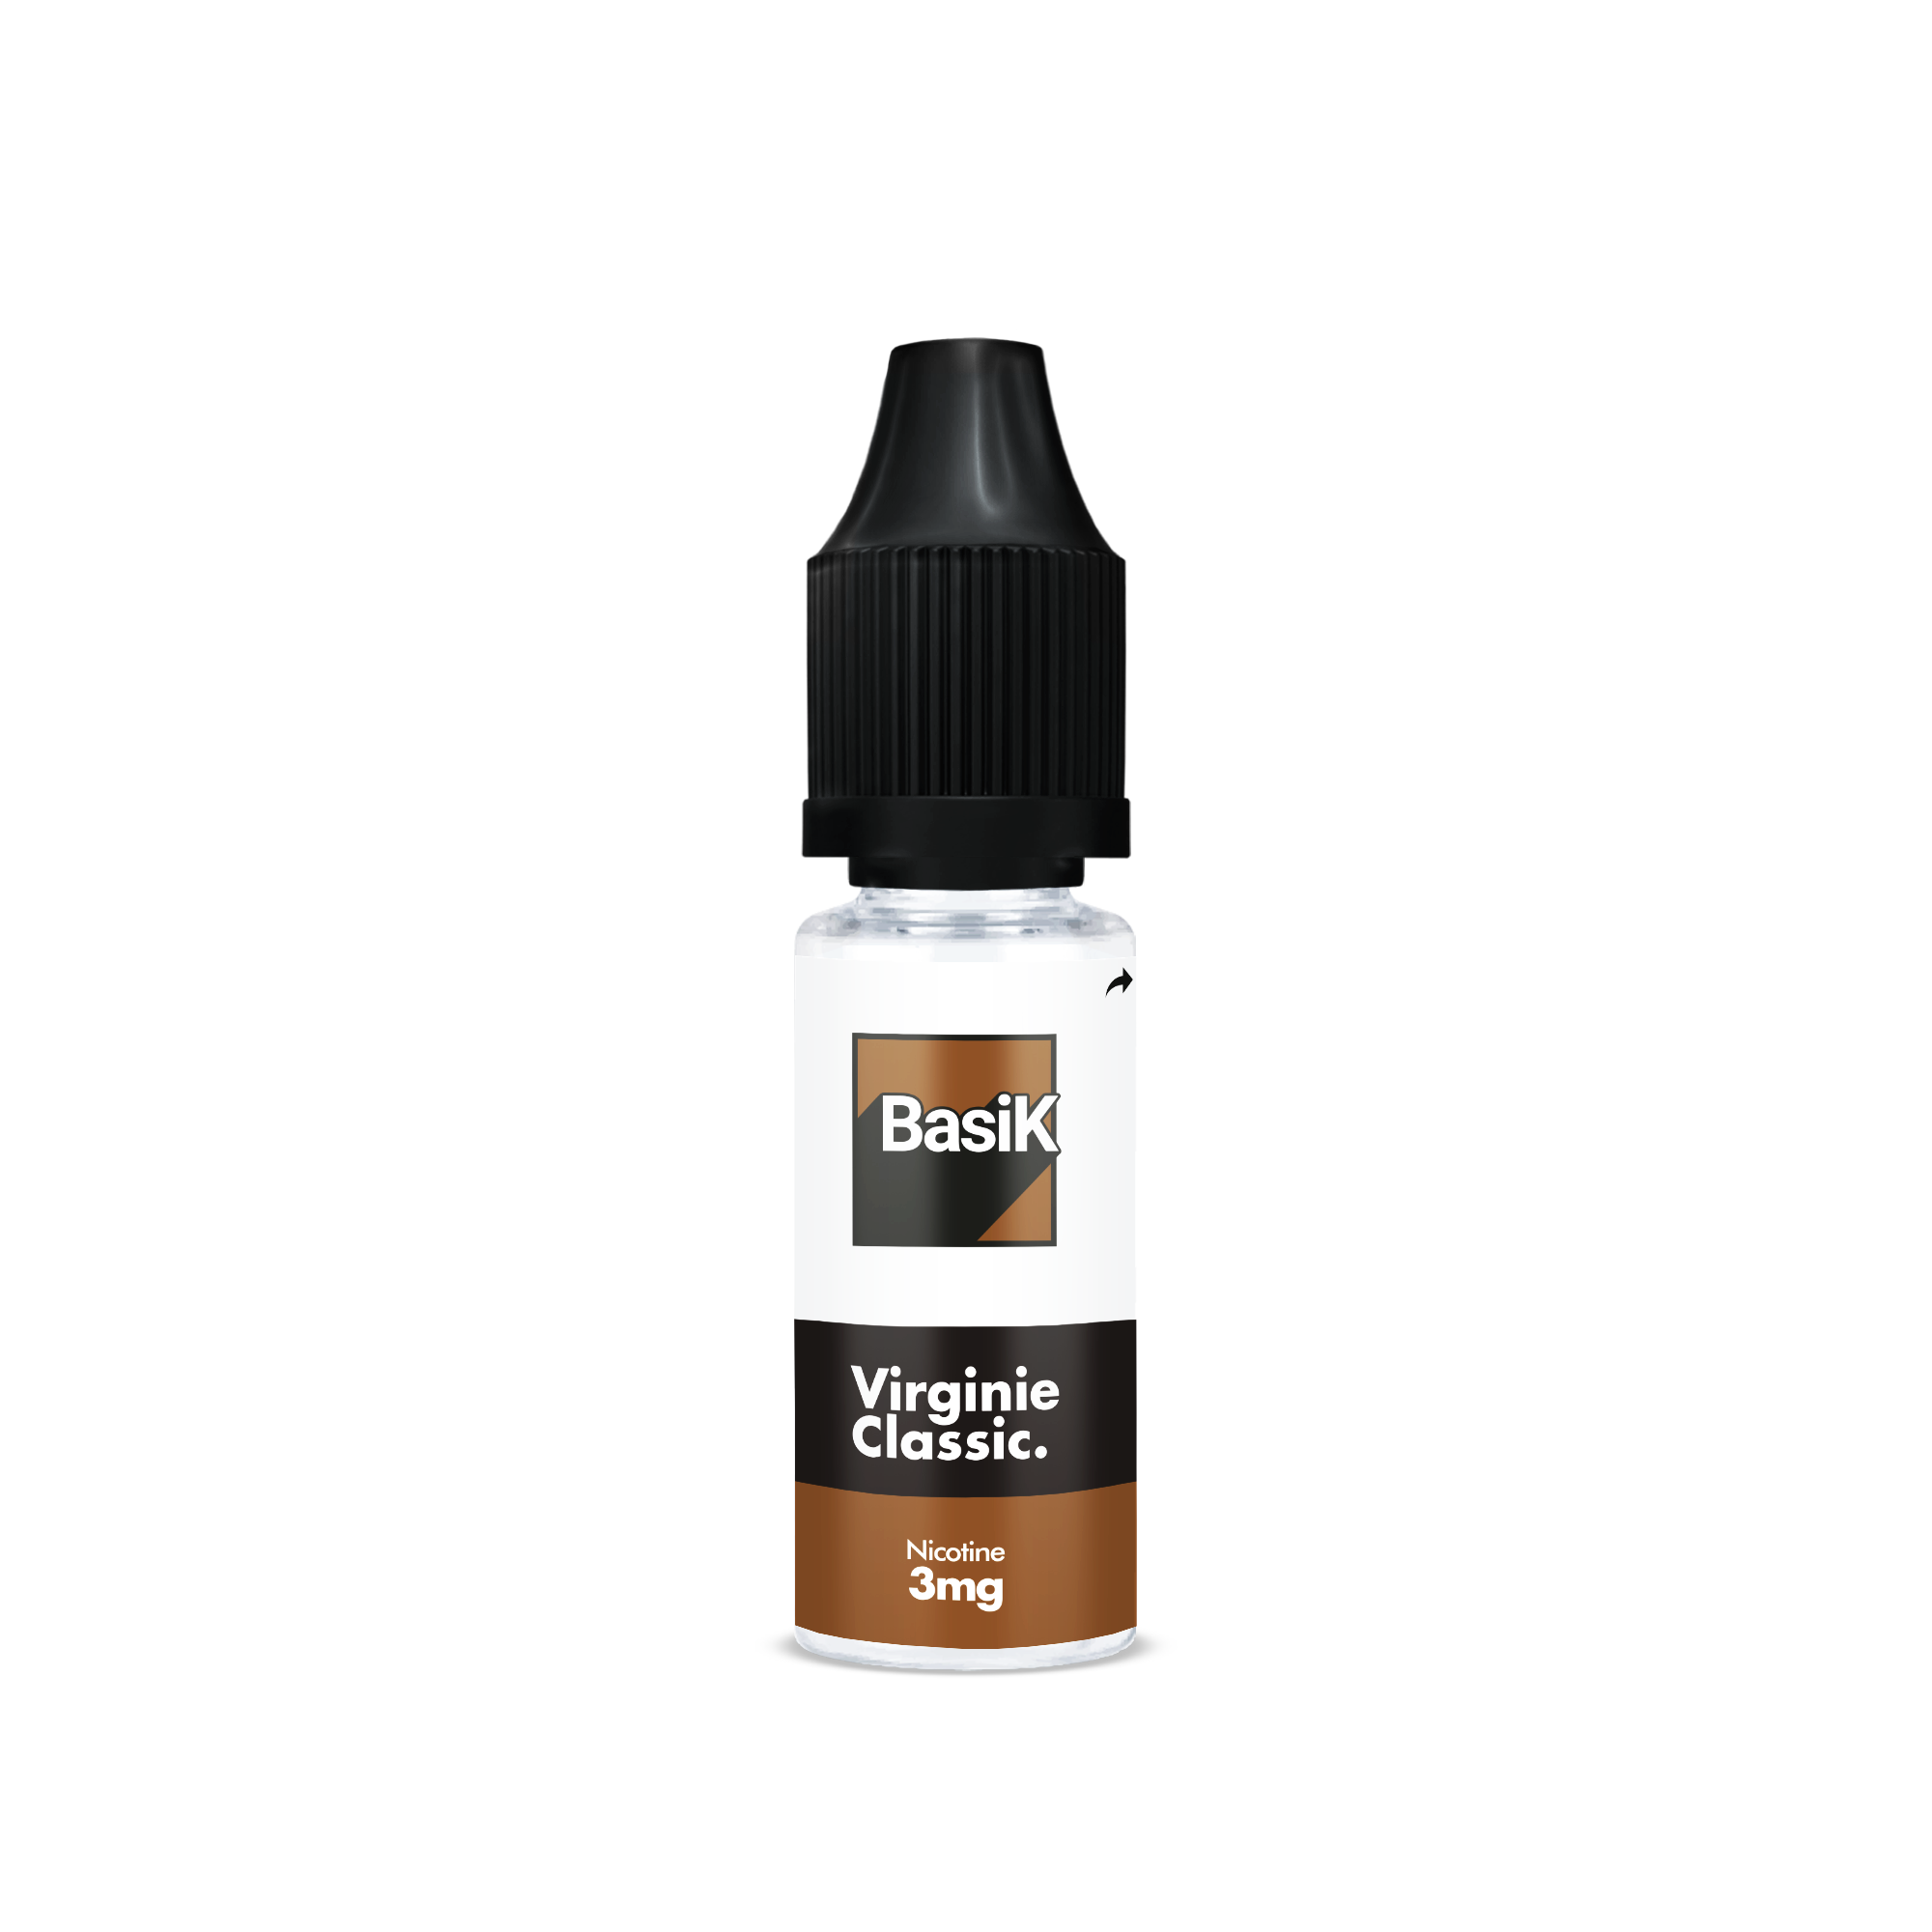 E-liquide VIRGINIE CLASSIC de la Gamme Basik en format 10ml nicotiné goût classic blond et équilibré en sels de nicotine